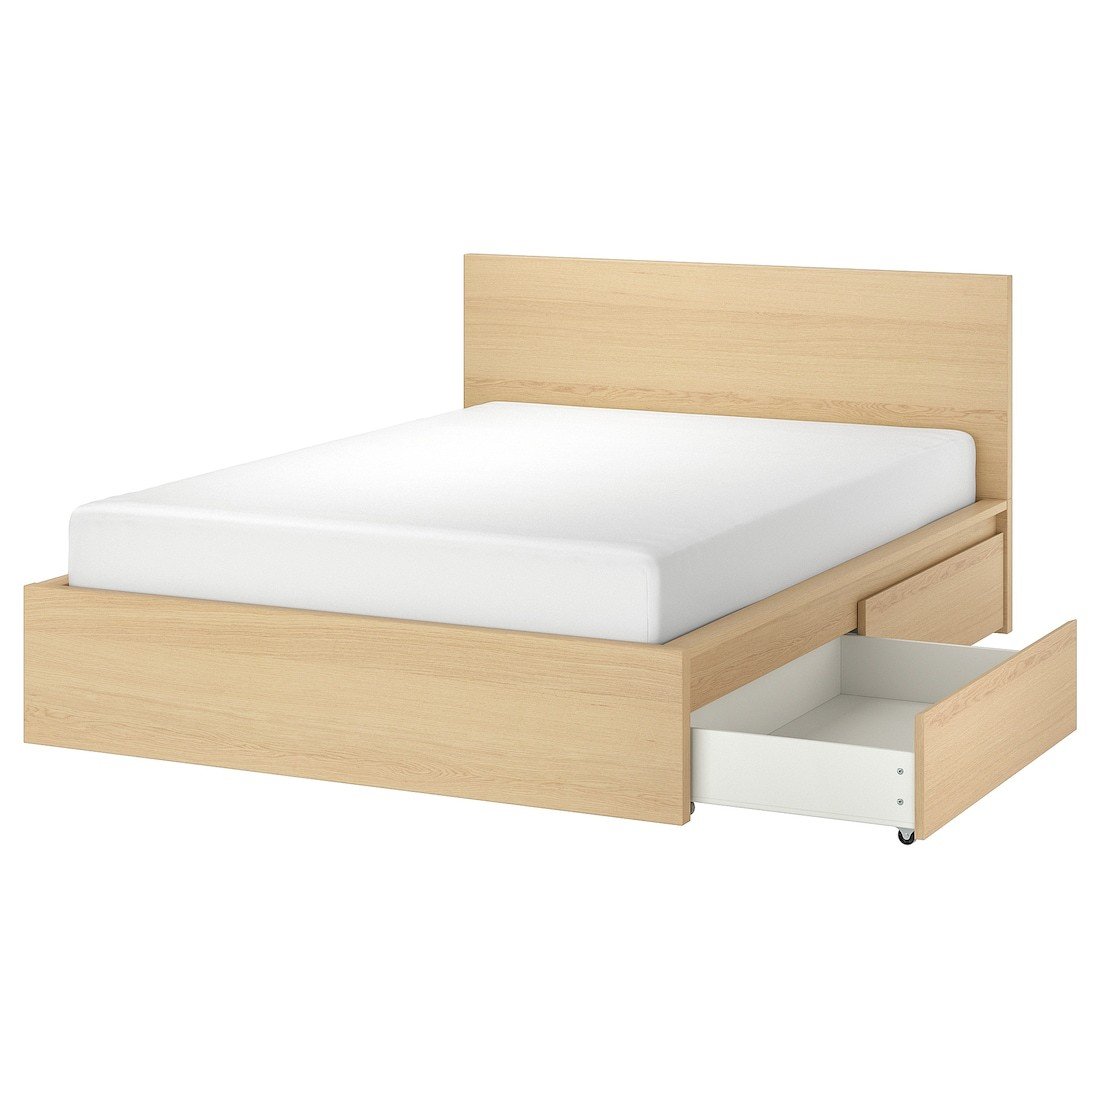 MALM МАЛЬМ Ліжко двоспальне з 2 шухлядами, шпон дуба білений / Luröy, 180x200 см